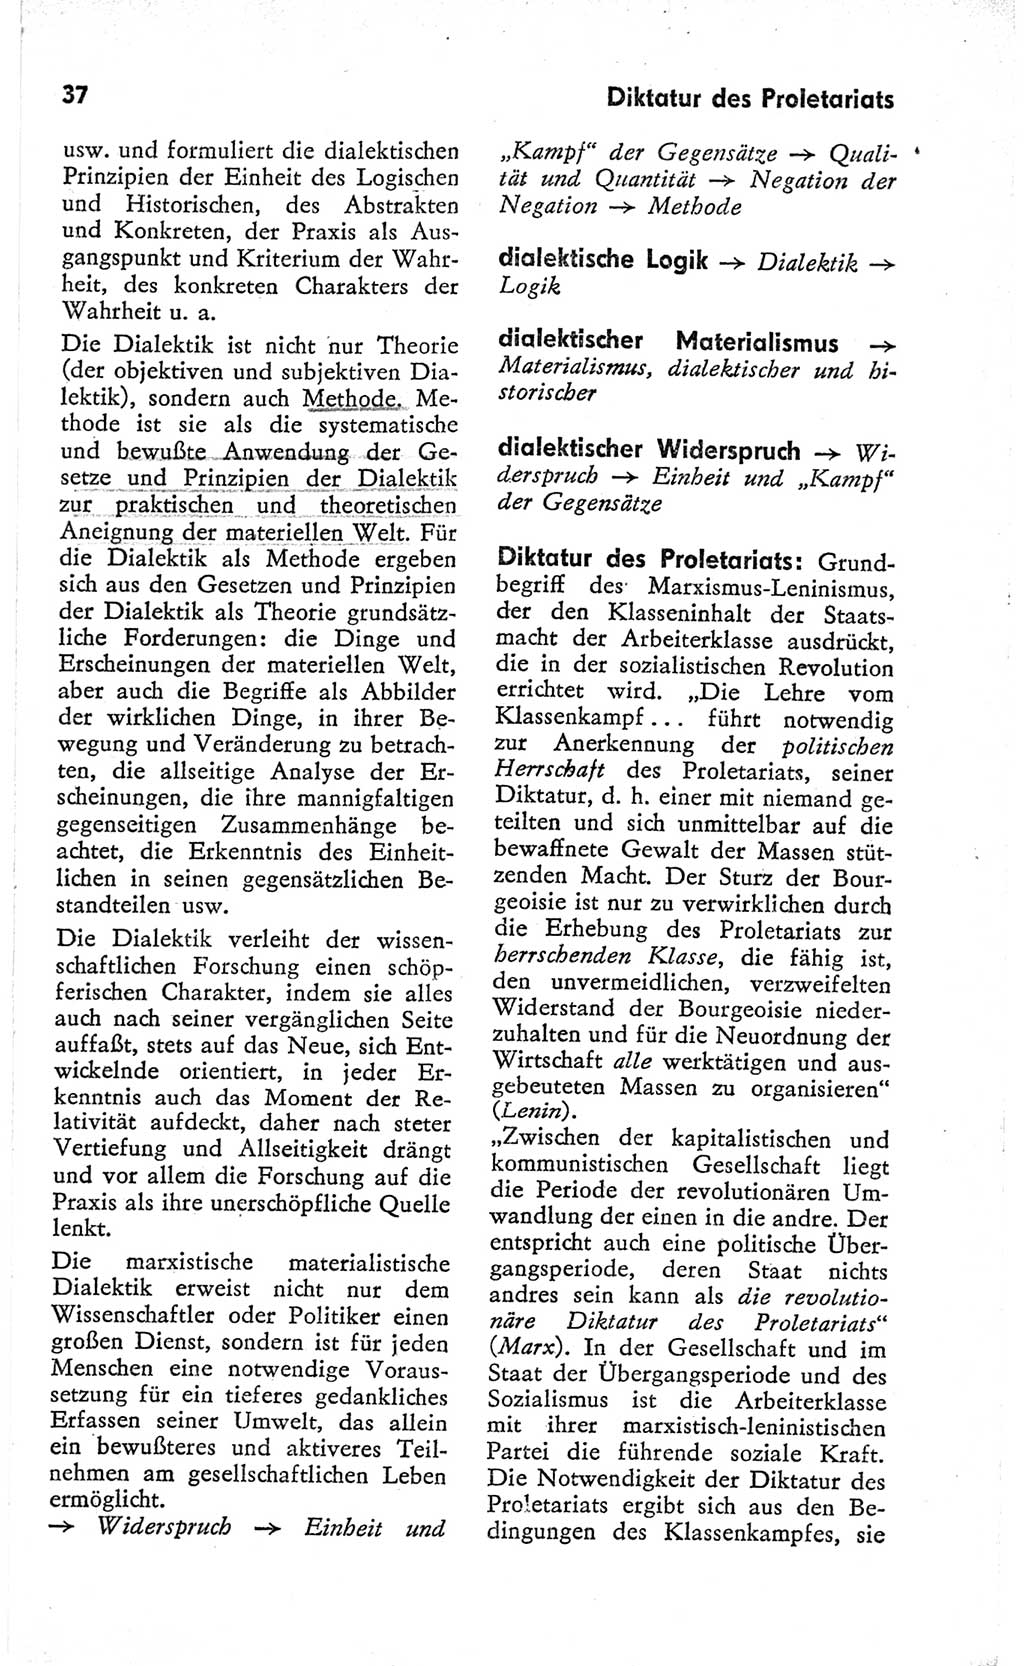 Kleines Wörterbuch der marxistisch-leninistischen Philosophie [Deutsche Demokratische Republik (DDR)] 1966, Seite 37 (Kl. Wb. ML Phil. DDR 1966, S. 37)